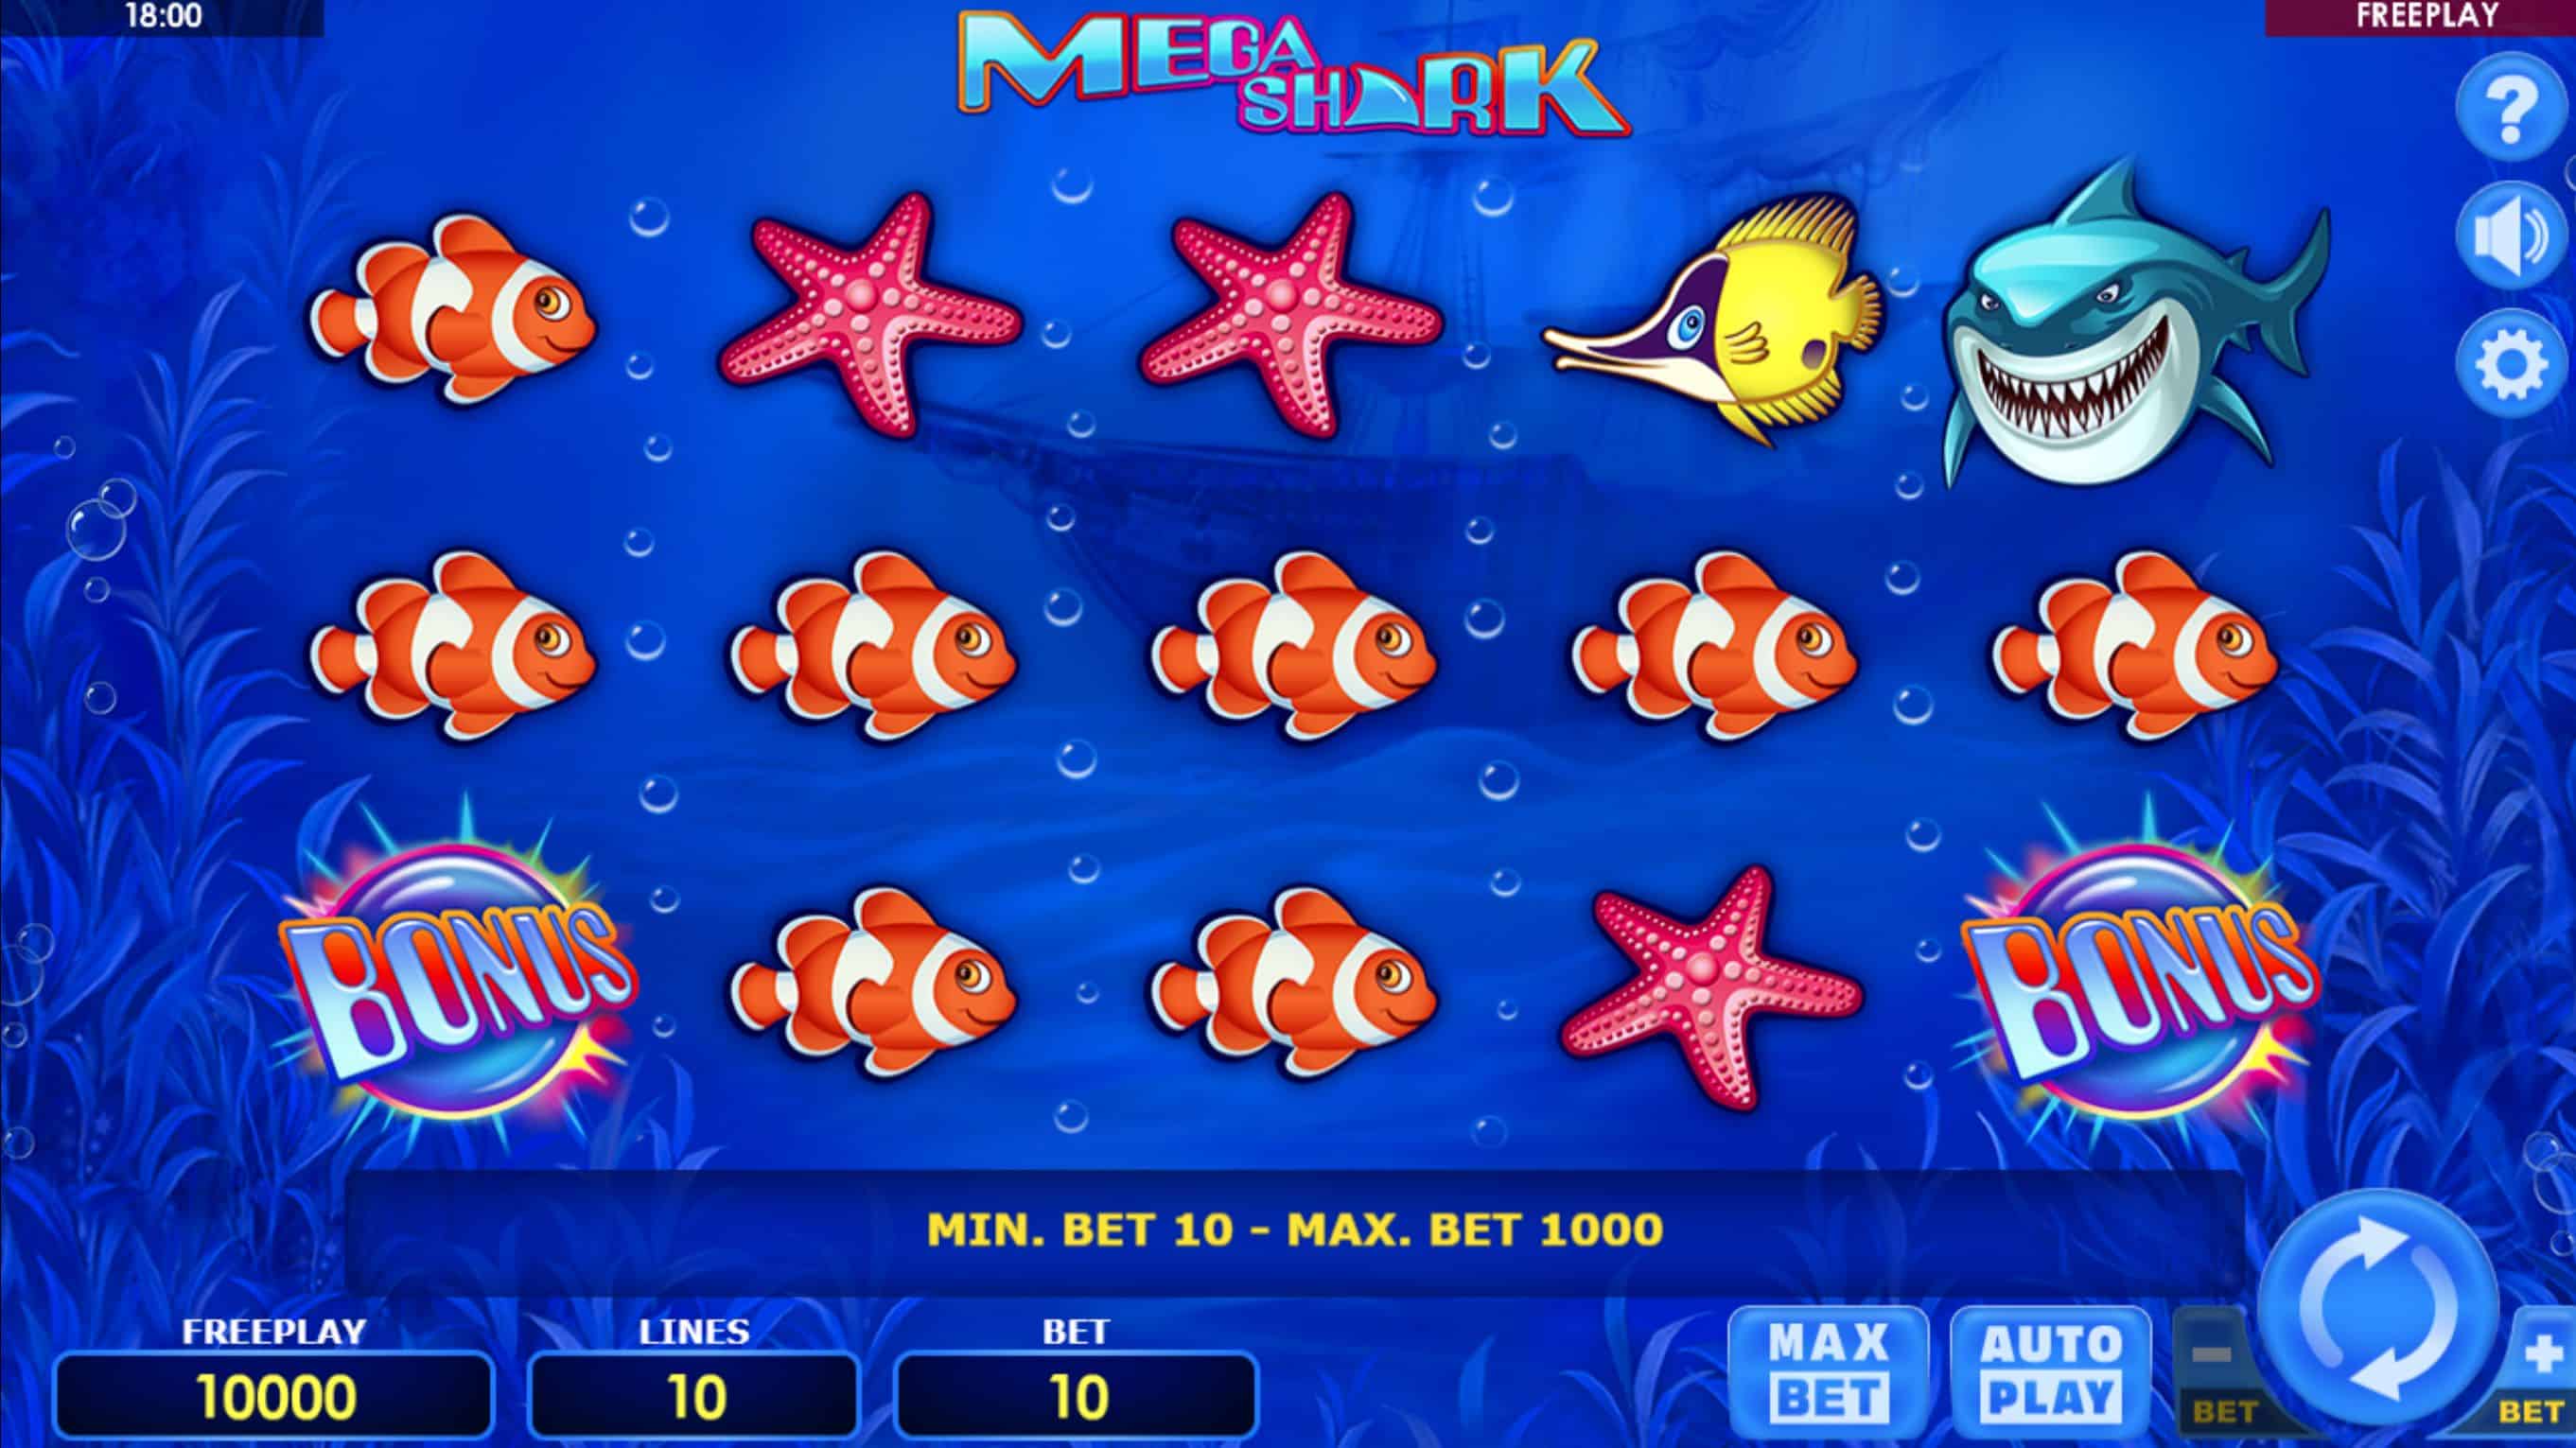 Mega Shark Slot Game Free Play at Casino Ireland 01